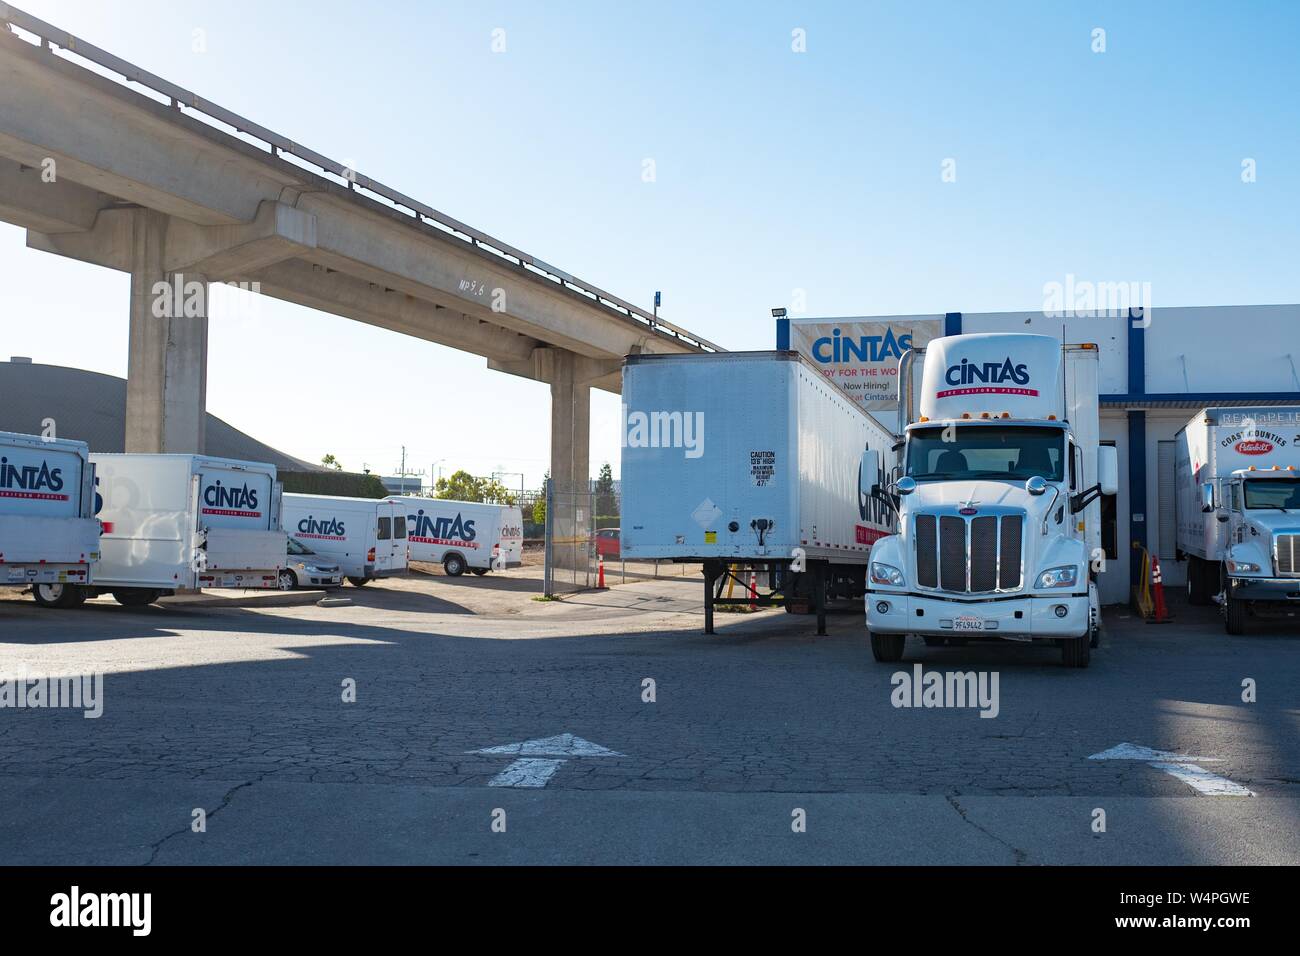 Lieferfahrzeuge und Traktor Anhänger mit Logos sind auf lokaler Distribution Center für Cintas einheitliche Lieferservice in San Leandro, Kalifornien, 10. September 2018 sichtbar. () Stockfoto